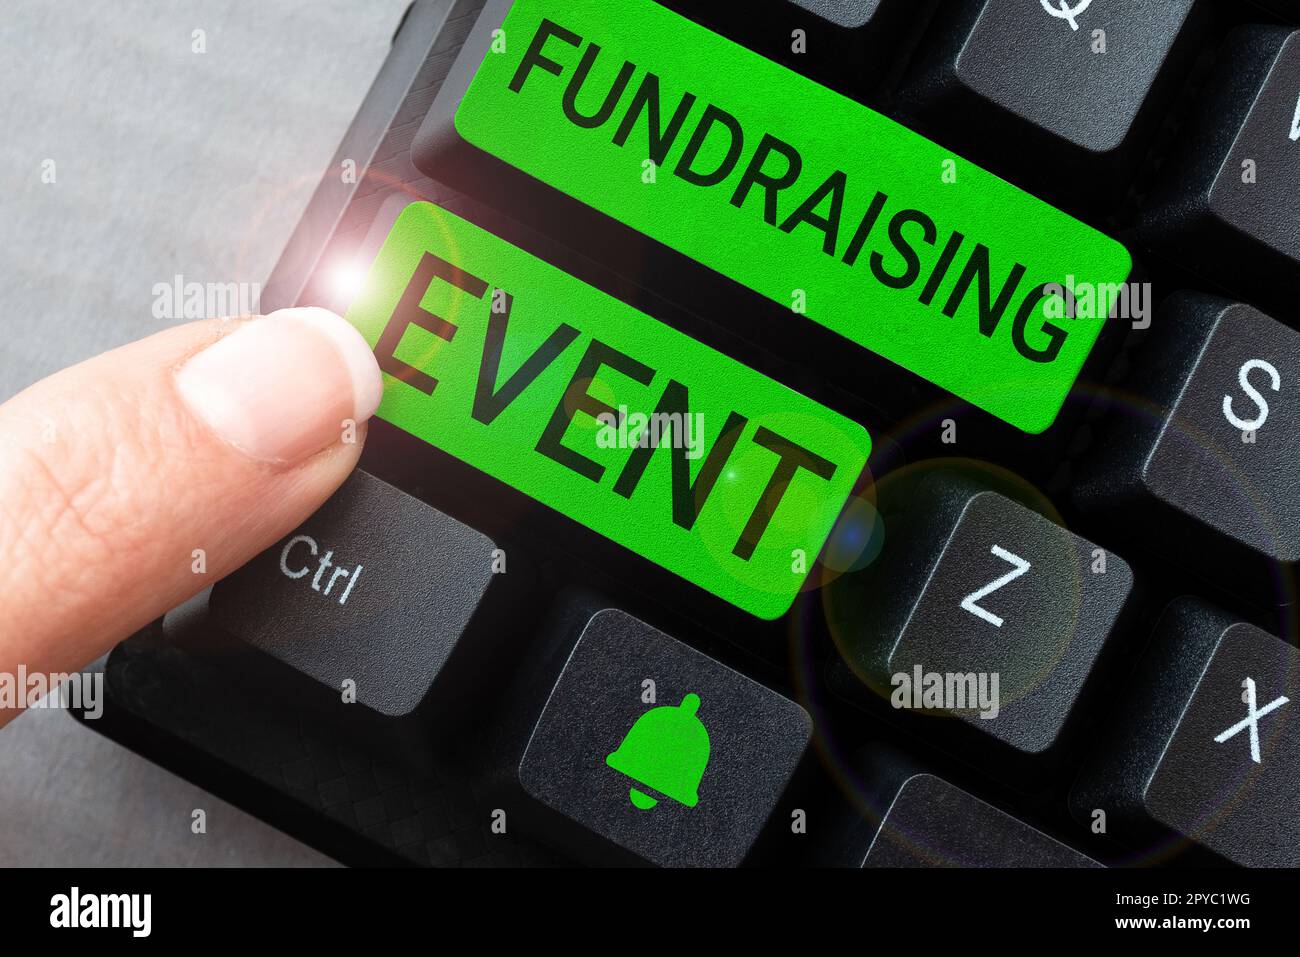 Fundraising-Veranstaltung für die konzeptionelle Darstellung. Konzept bedeutet Kampagne, deren Zweck es ist, Geld für eine Sache zu sammeln Stockfoto